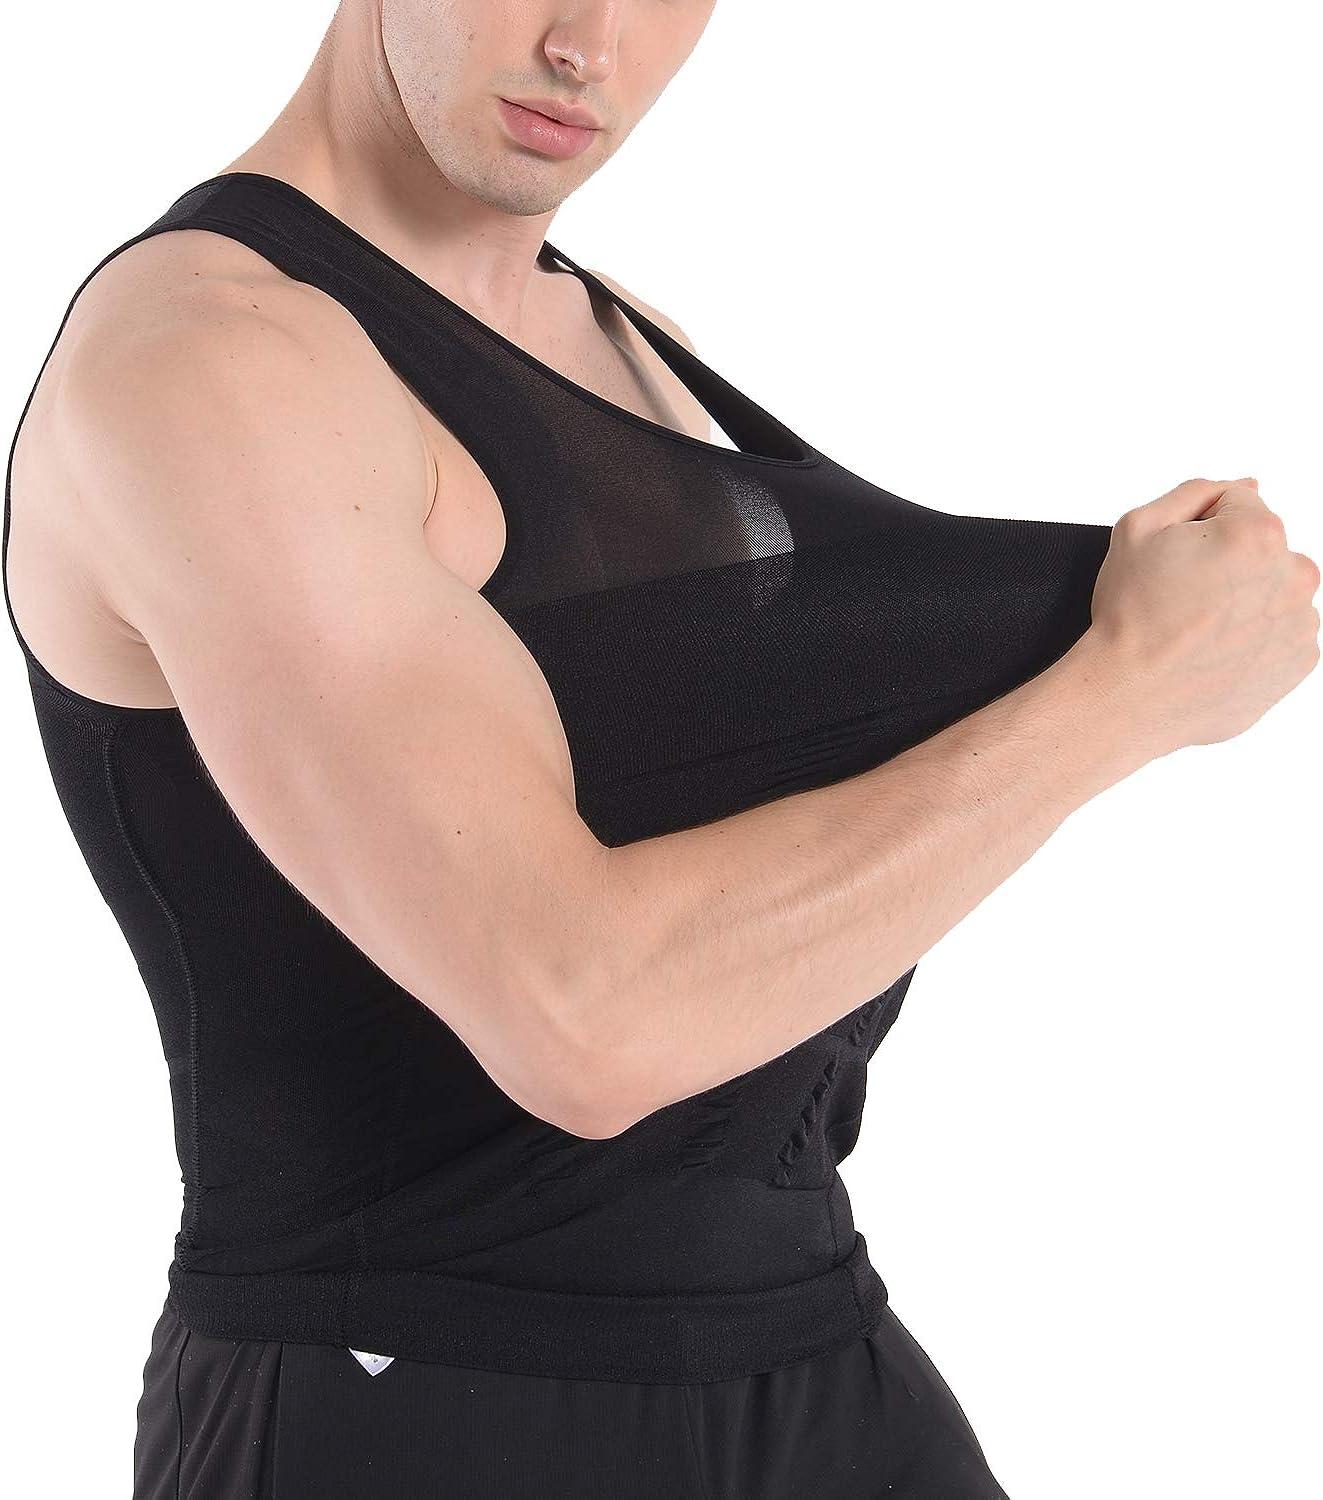 COOFANDY Men's 2 Pack Compression Shirt Slimming Body Shaper Vest